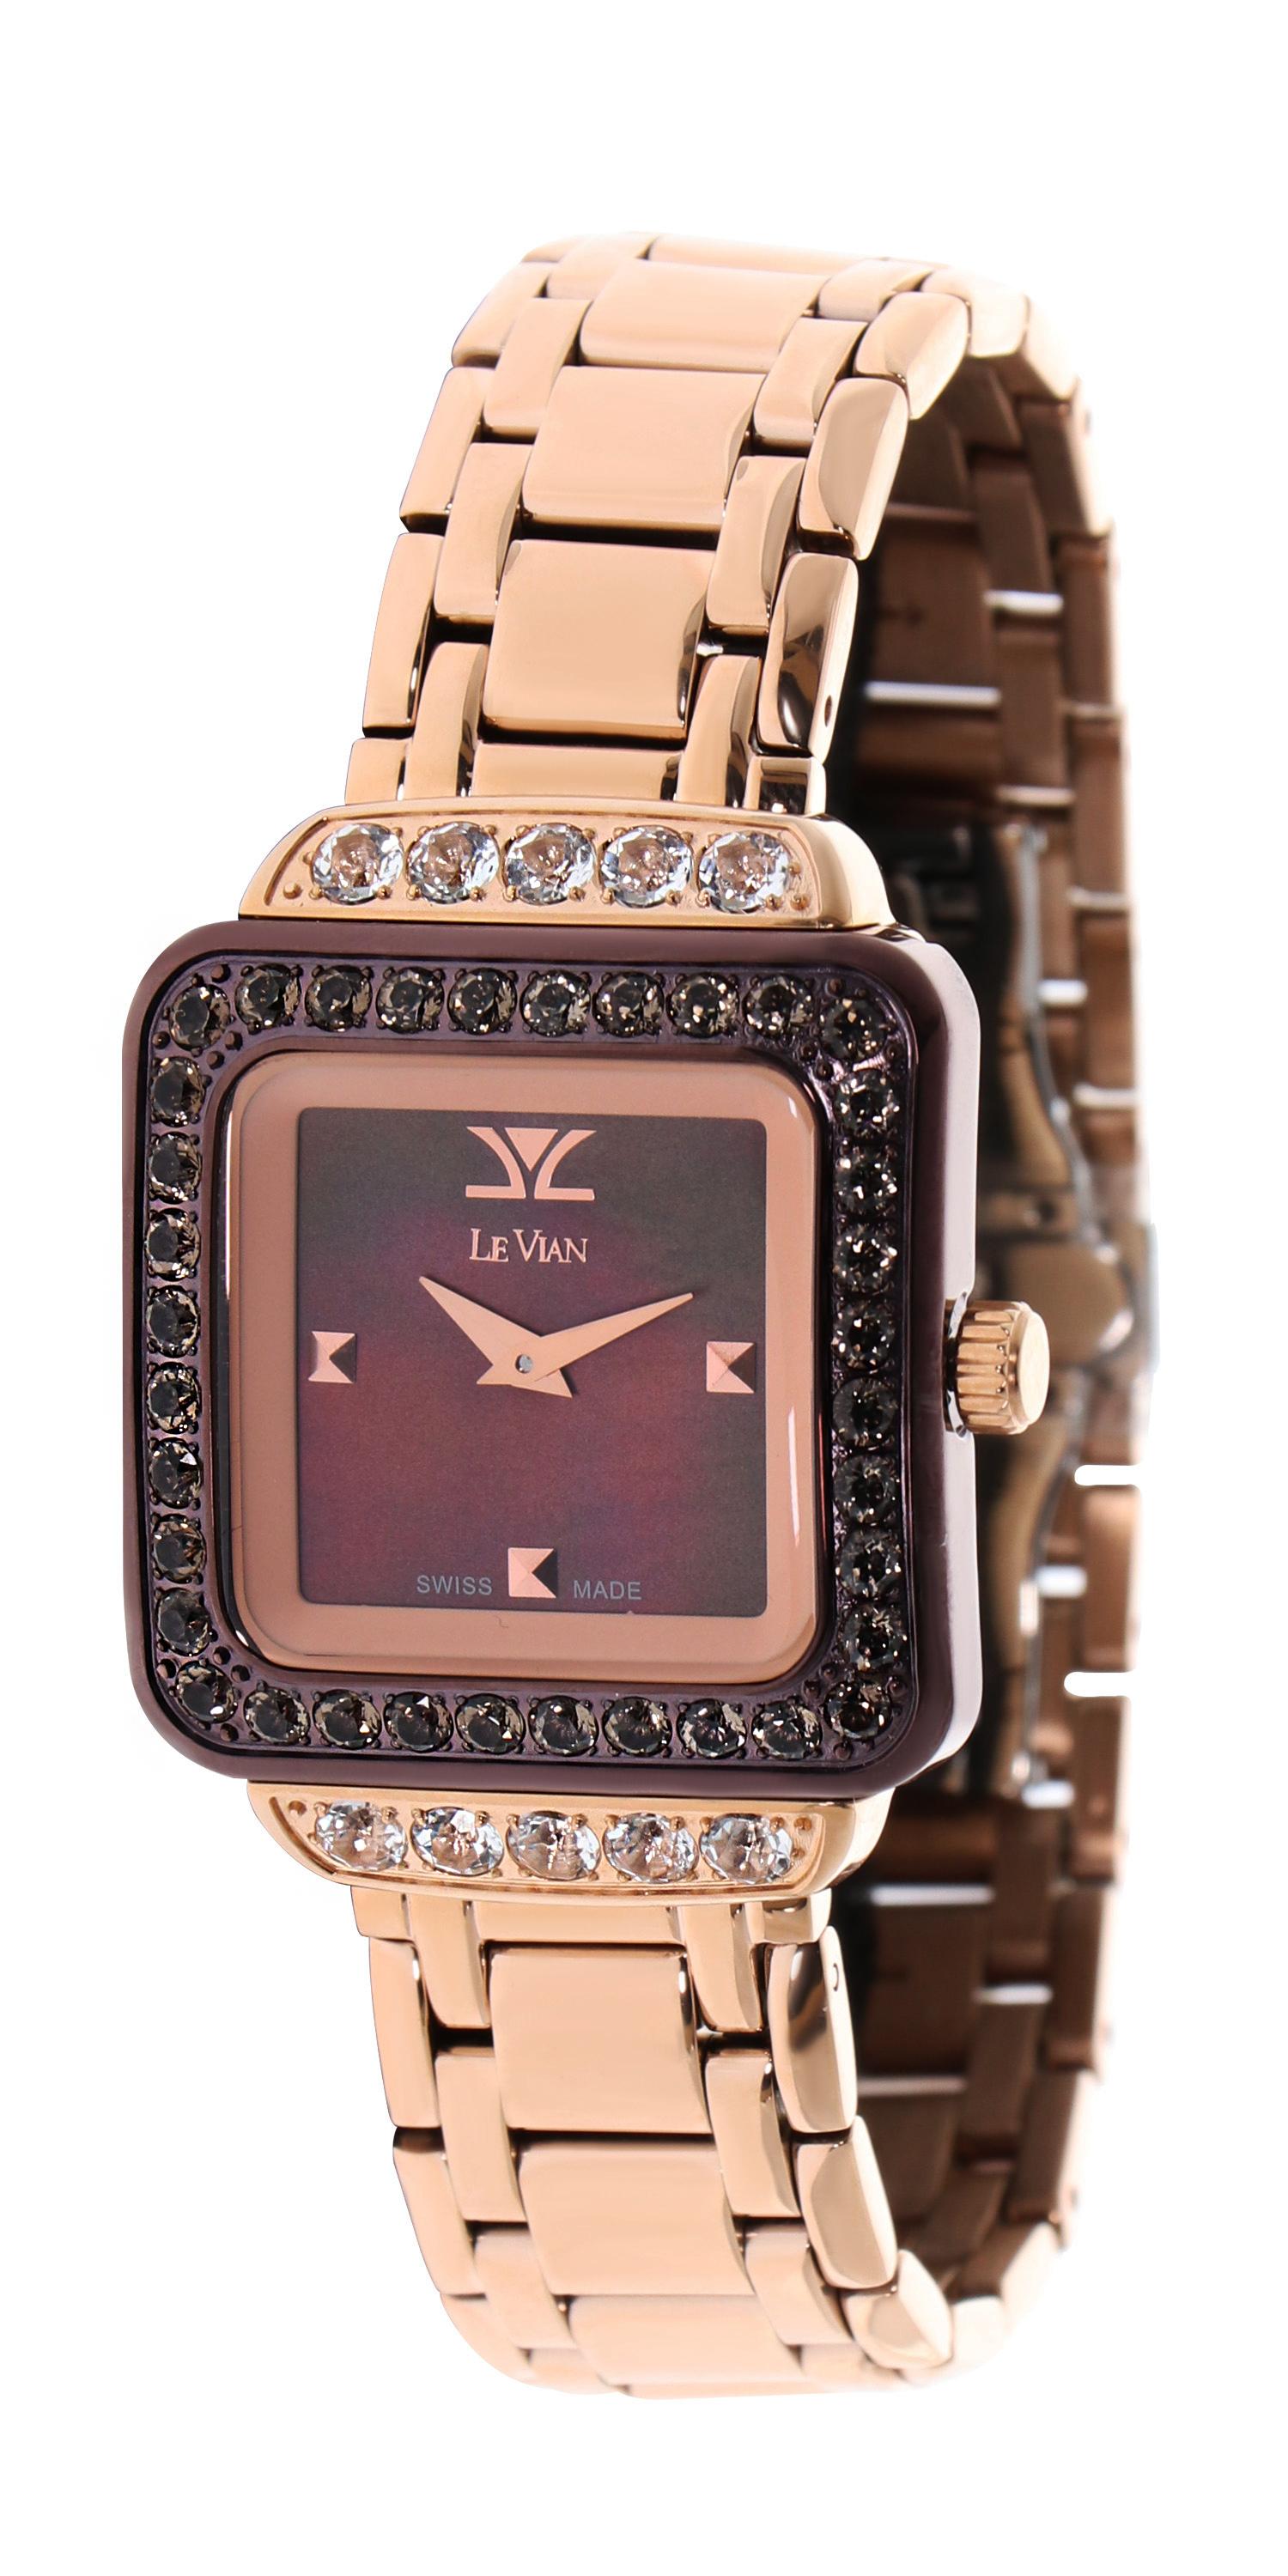 Le Vian 32mm quadratische Armbanduhr mit 1,98 von Chocolate Quartz und 2,05 von Vanilla Topaz in Strawberry Gold Stainless Steel.
